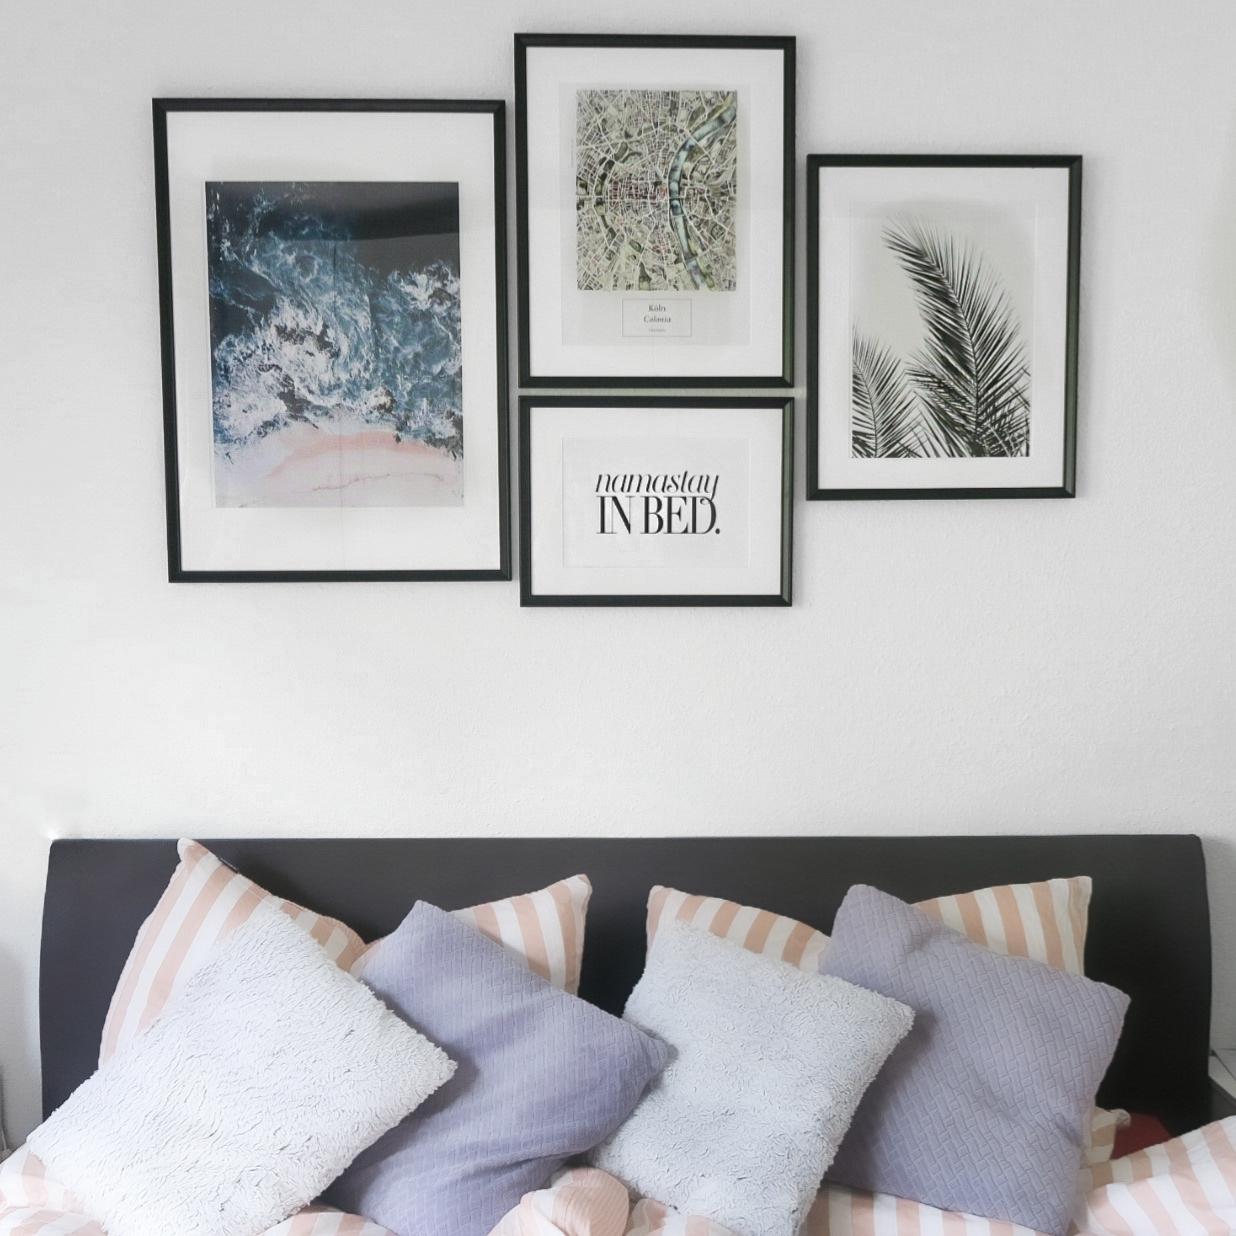 Endlich neue Bilder von Juniqe und Bilderrahmen von Ikea.

#poster #homeinspo #bedroominspo #juniqe 